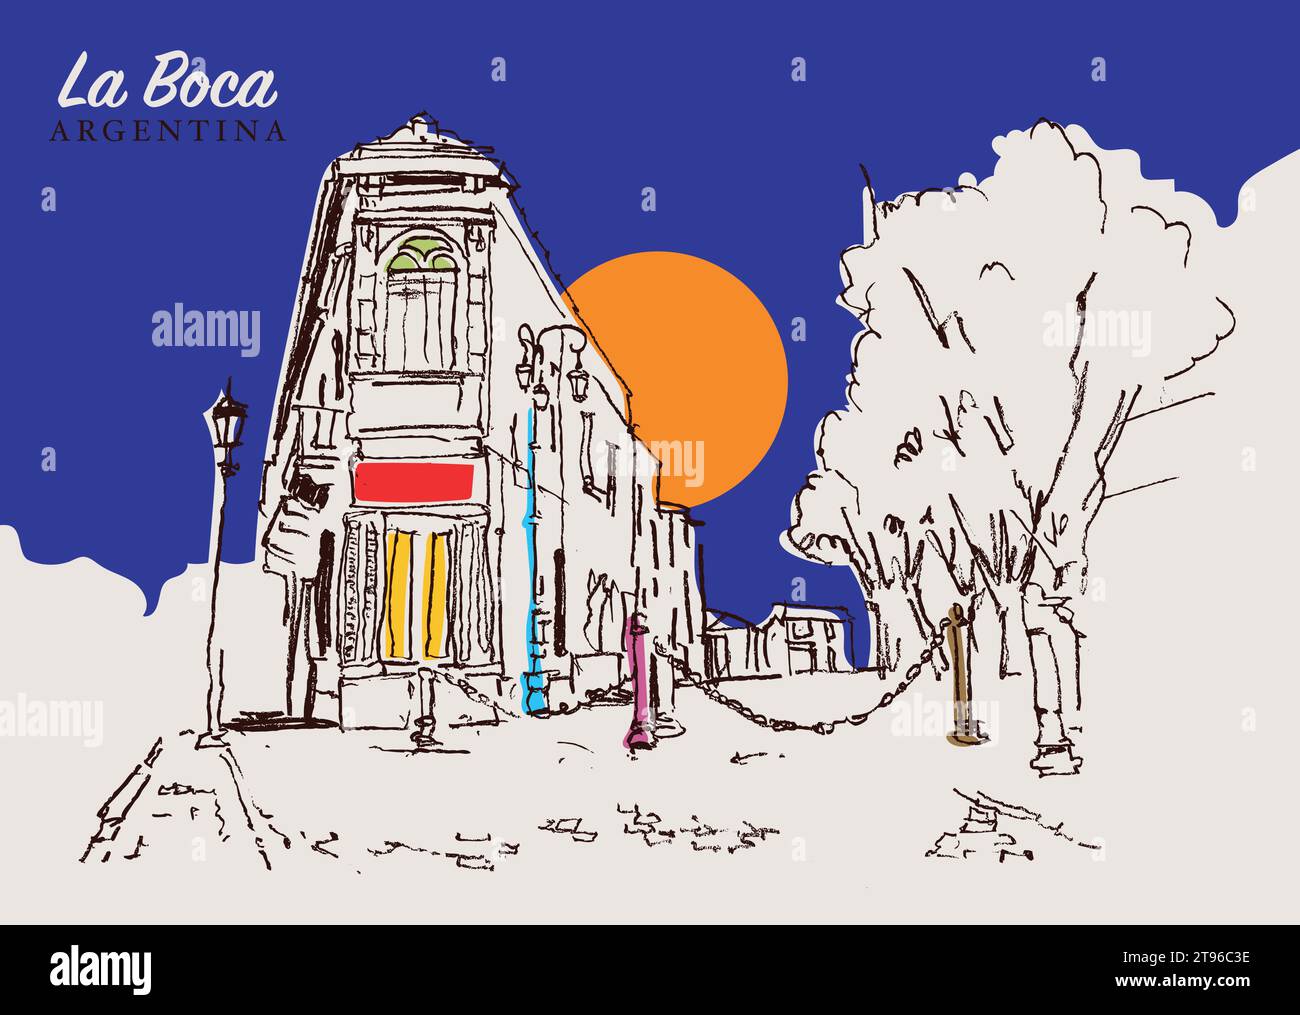 Illustration vectorielle dessinée à la main d'une rue traditionnelle à la Boca, Argentine. Illustration de Vecteur